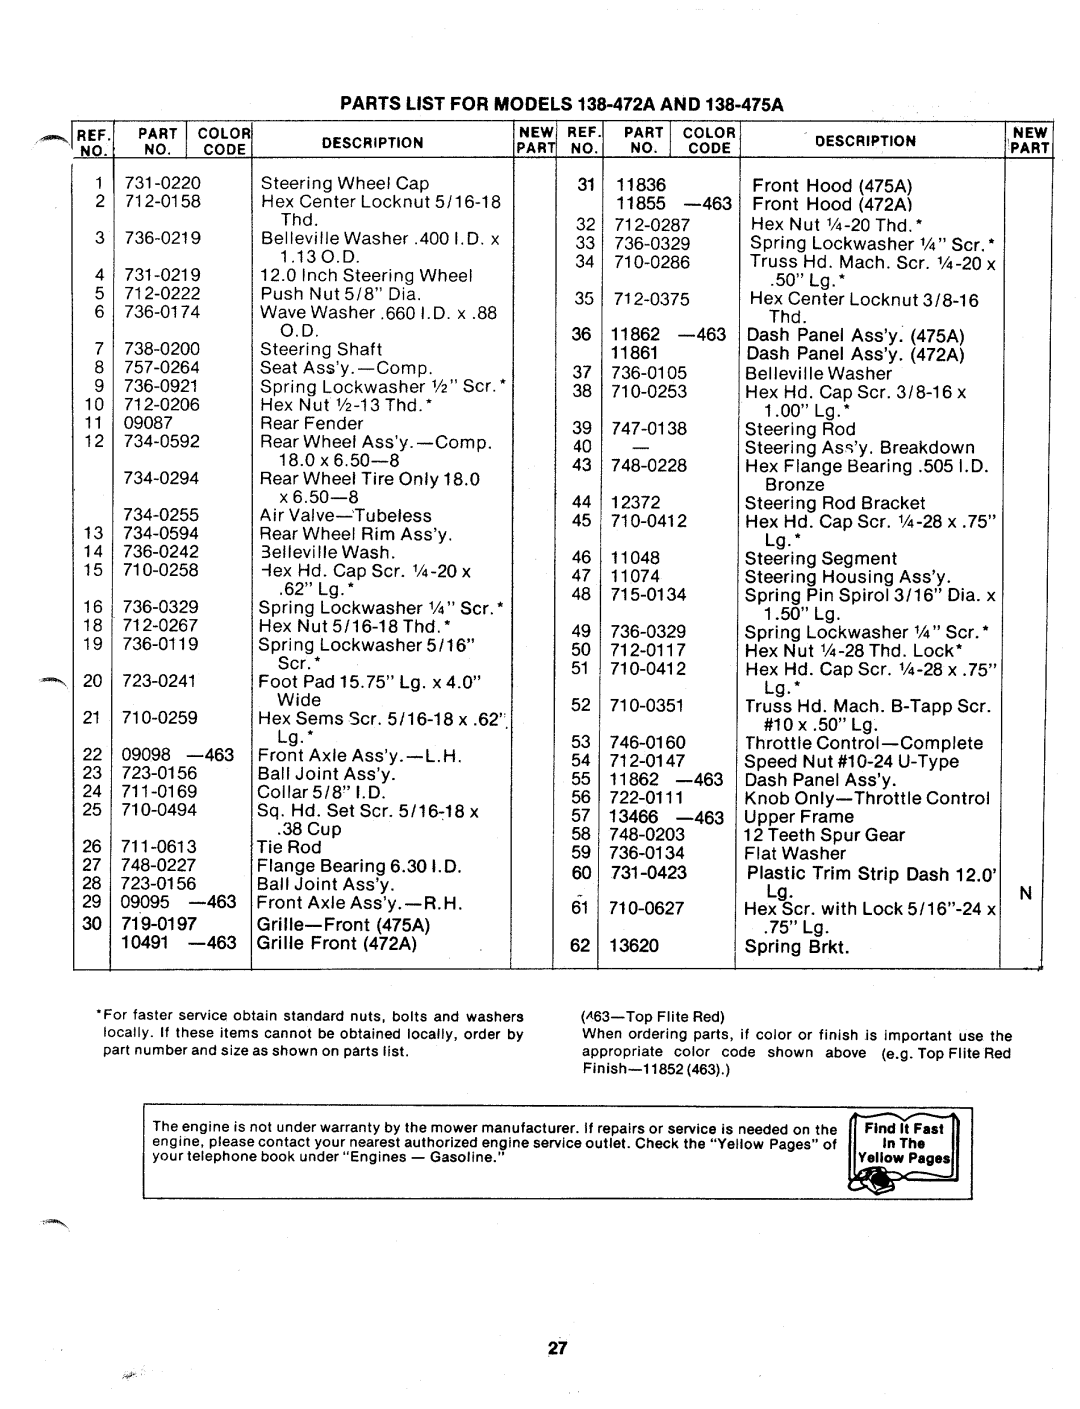 MTD 138-472A, 138-475A manual 